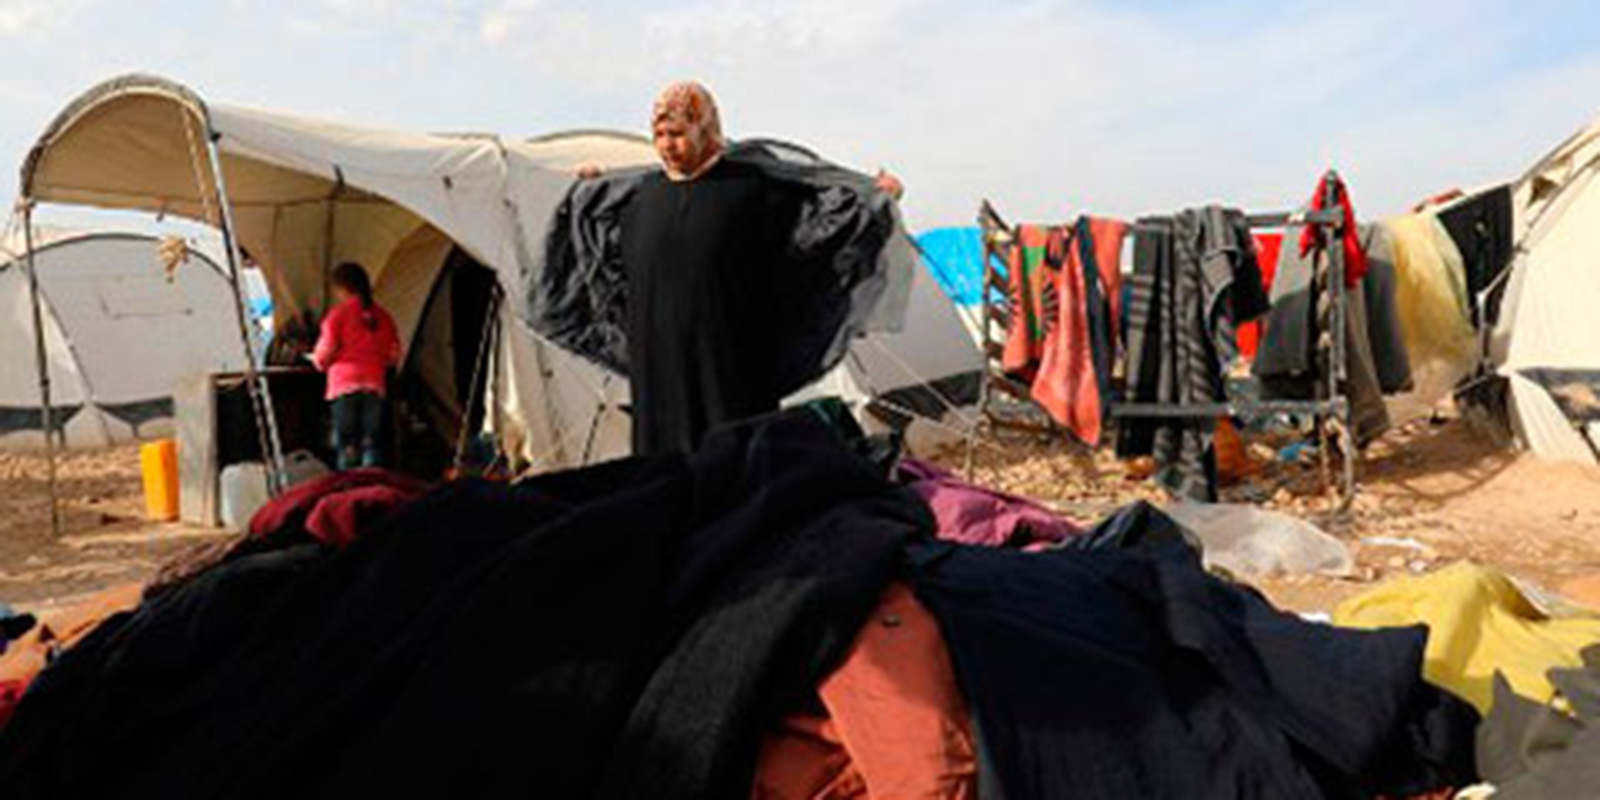 La lucha por sobrevivir al frío en los campos de desplazados sirios